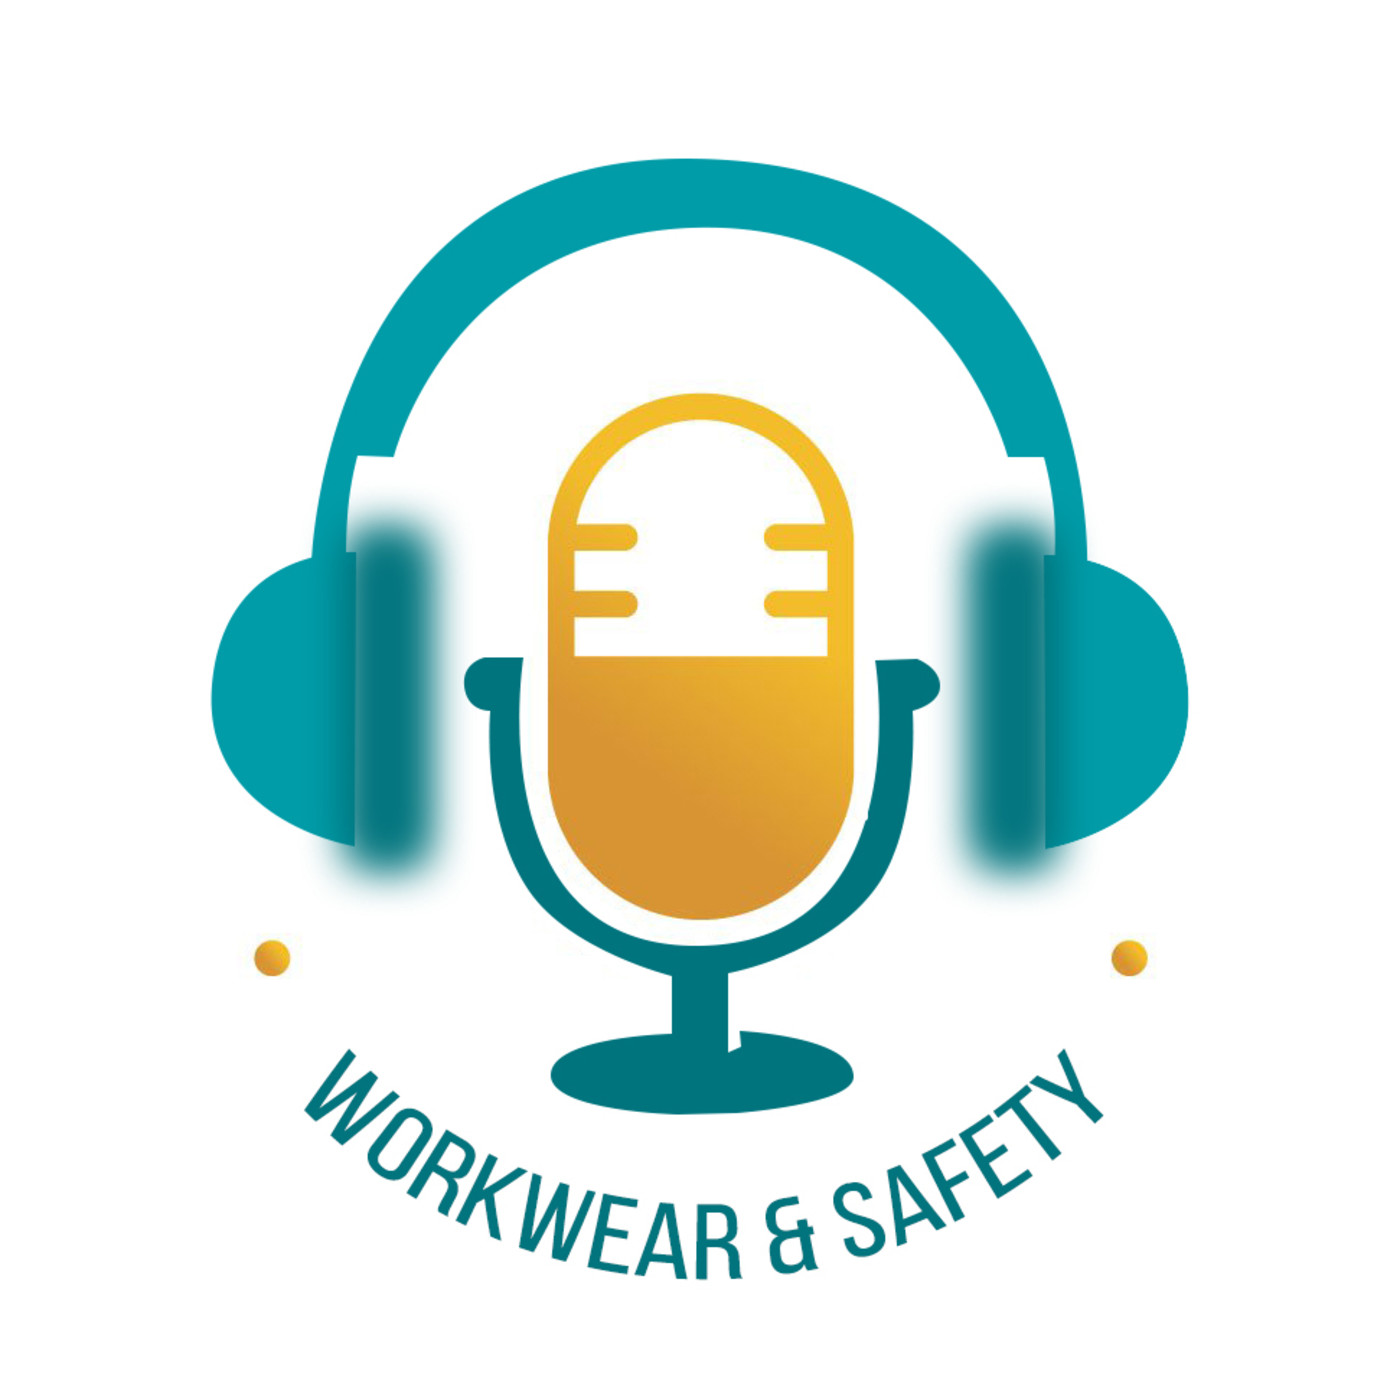 Workwear & safety